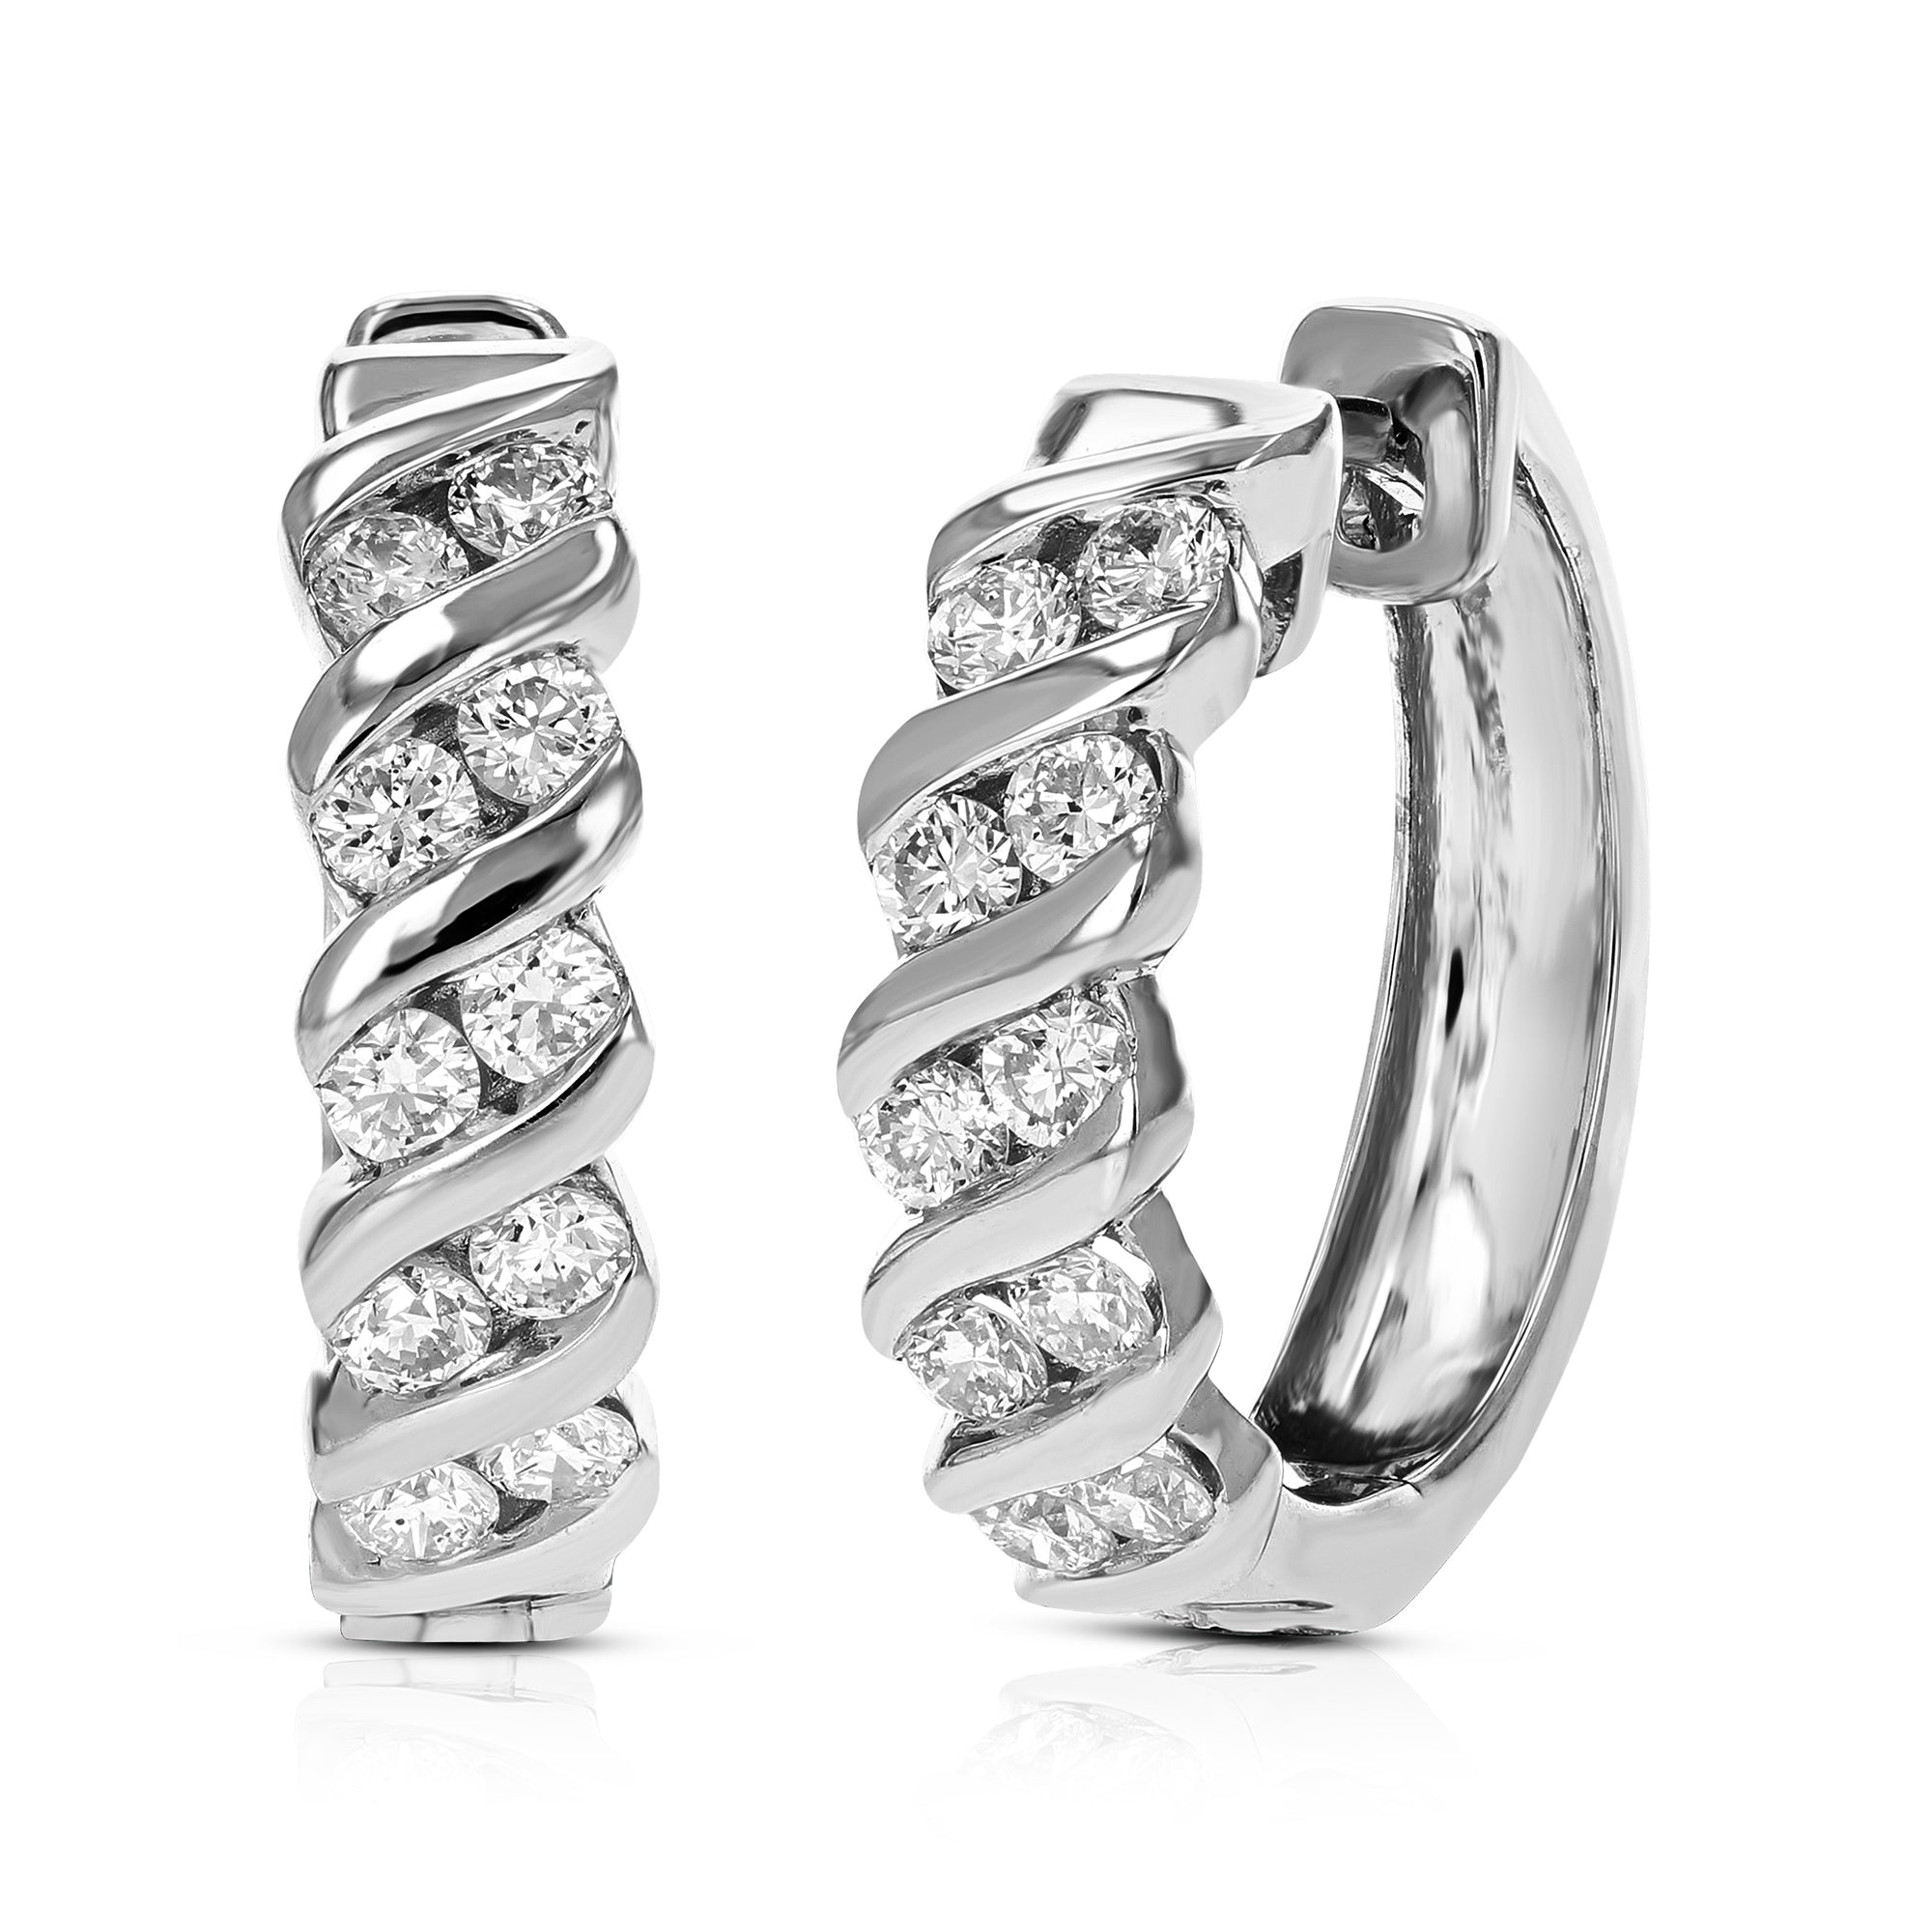 1 cttw Diamond Hoop Earrings for Women, Round Lab Grown Diamond Earrings in .925 Sterling Silver, Channel Setting, 3/4 Inch